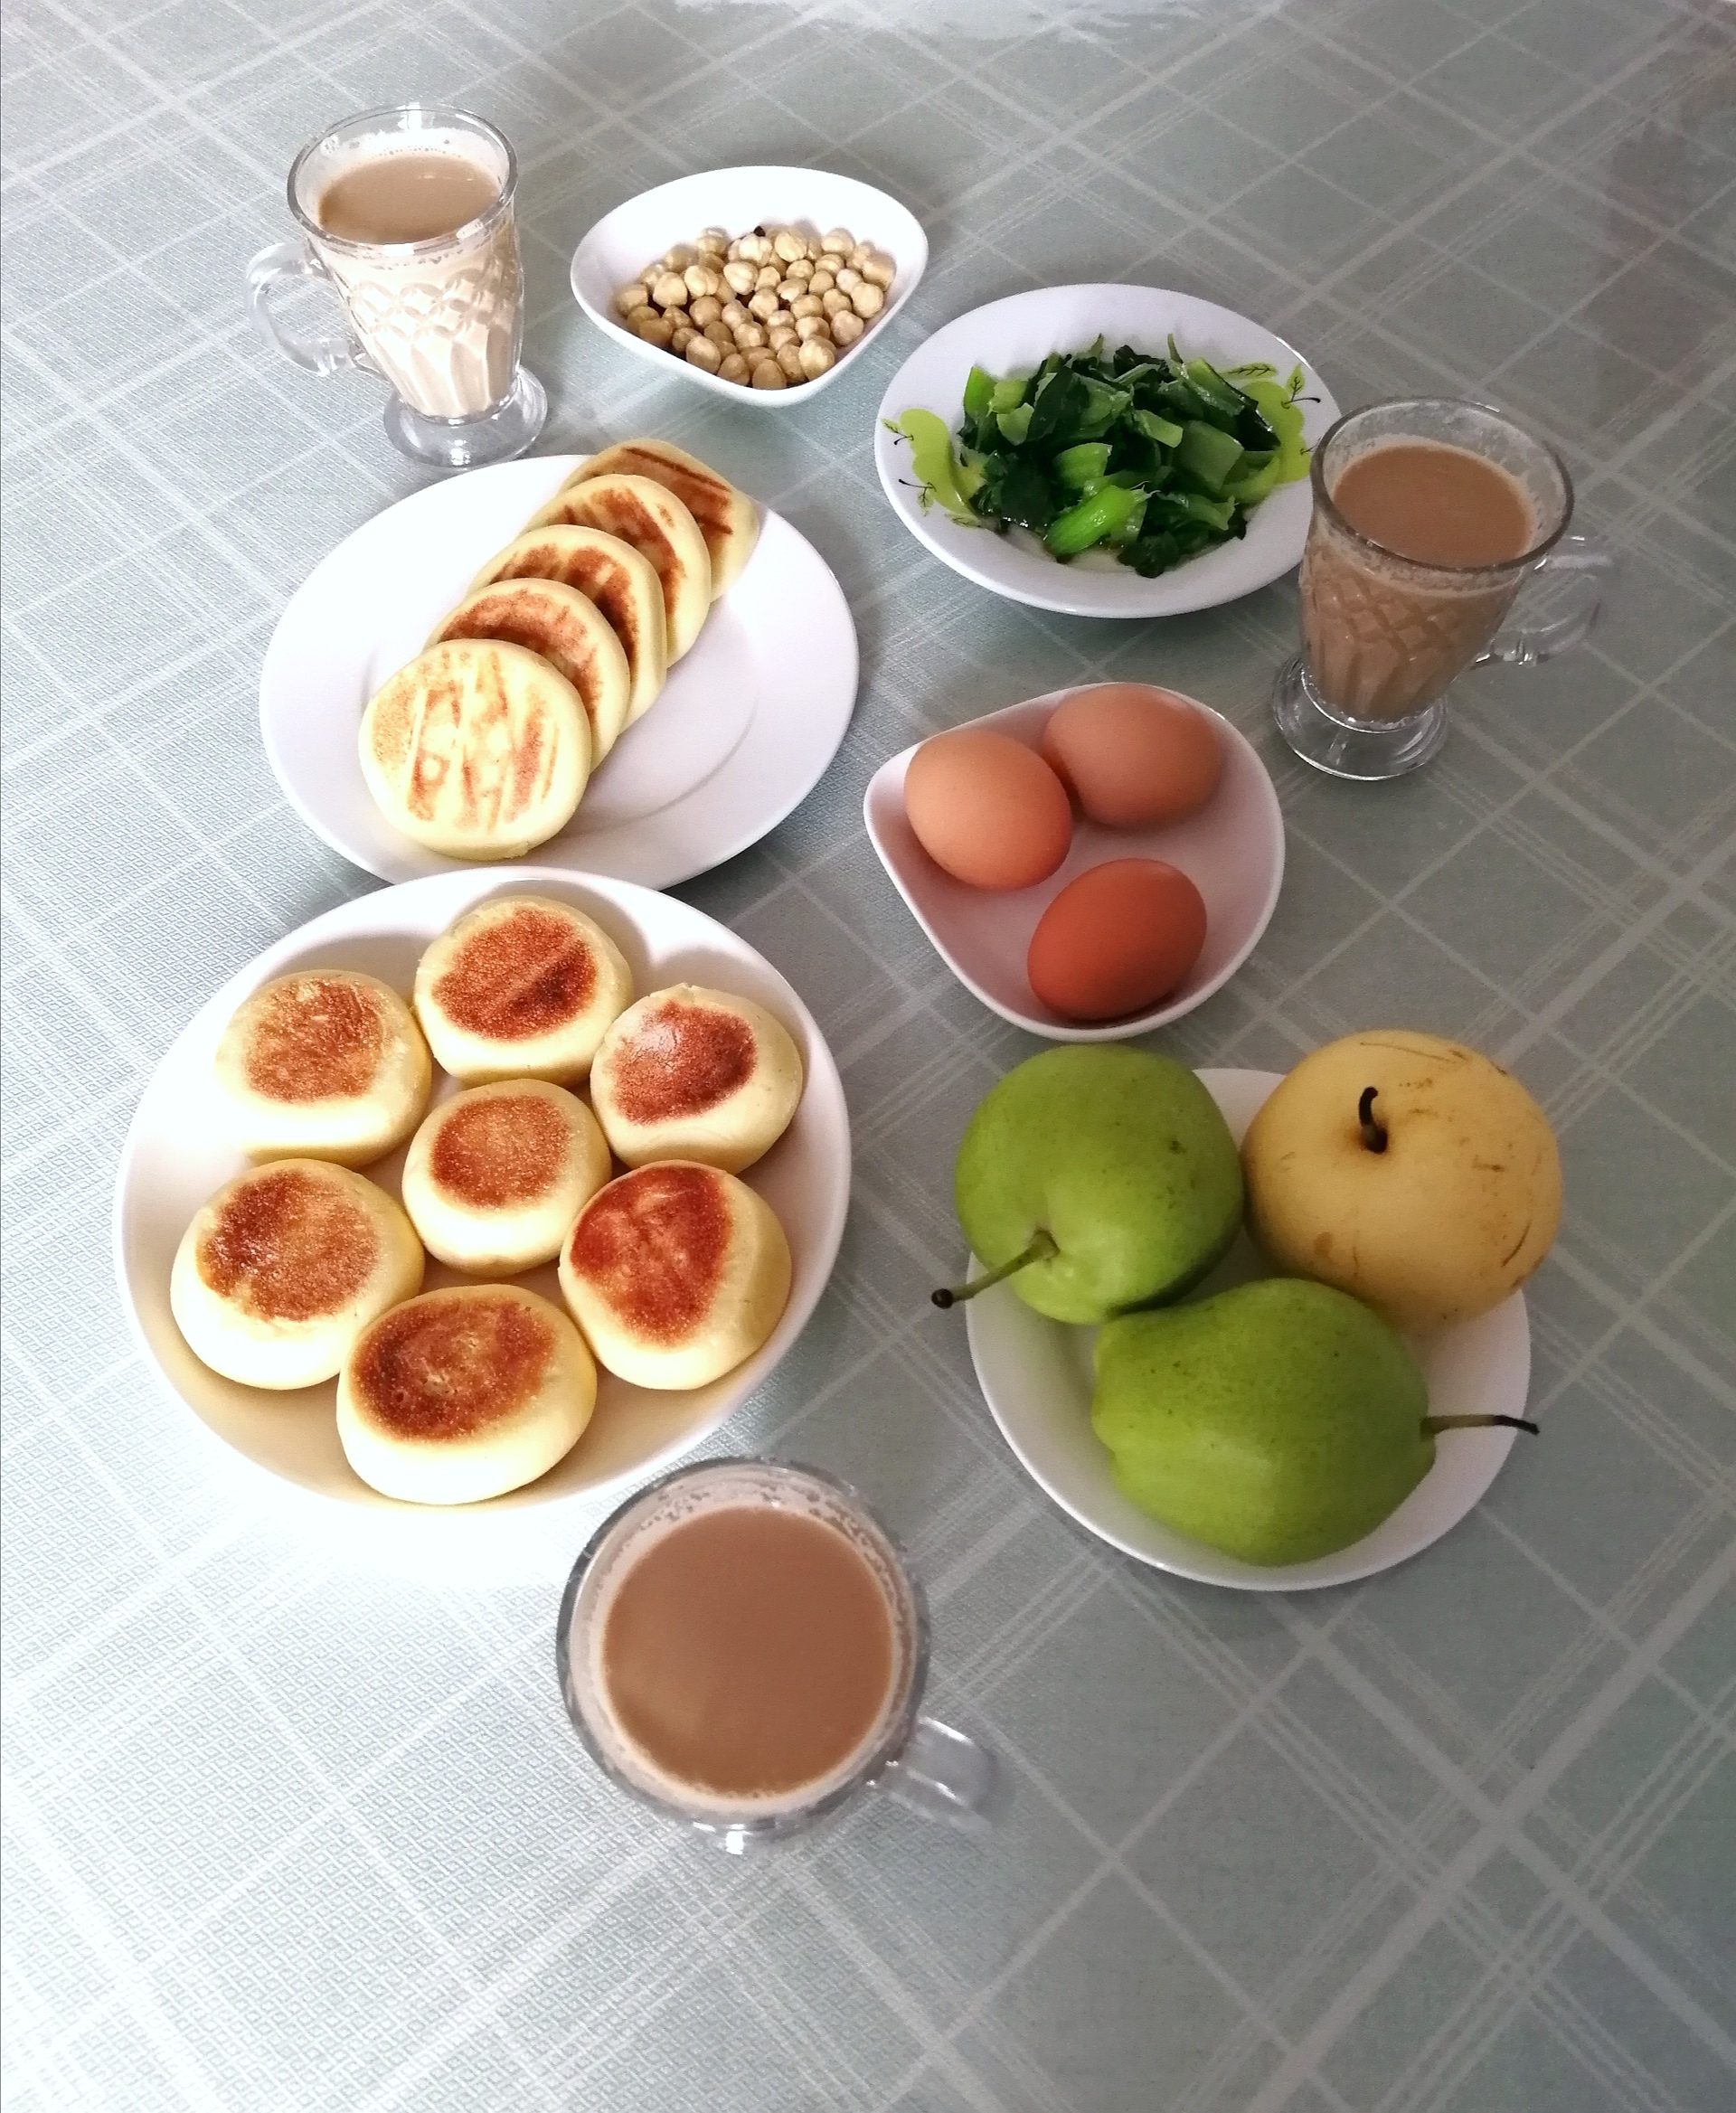 五天丰盛早餐分享,大多都是高蛋白,低脂肪,常吃精力充沛不发胖